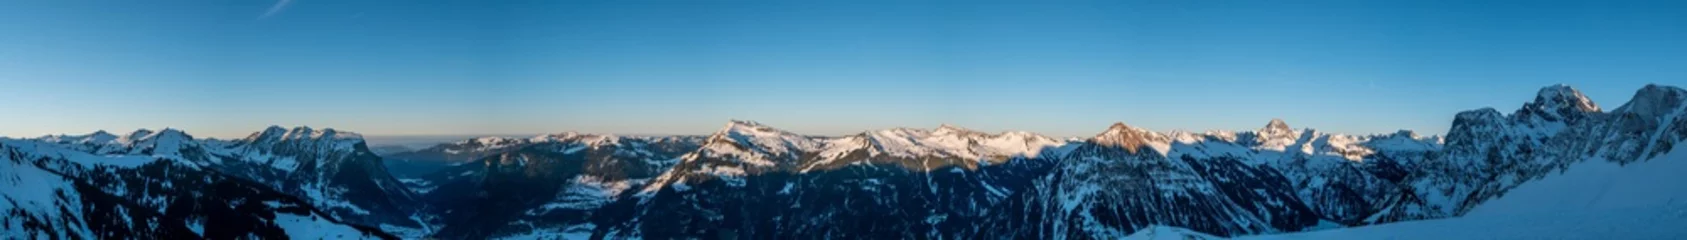 Fototapete Panoramafotos Abendliches Winterpanorama vom Hochalm-Kopf im Bregenzer Wald